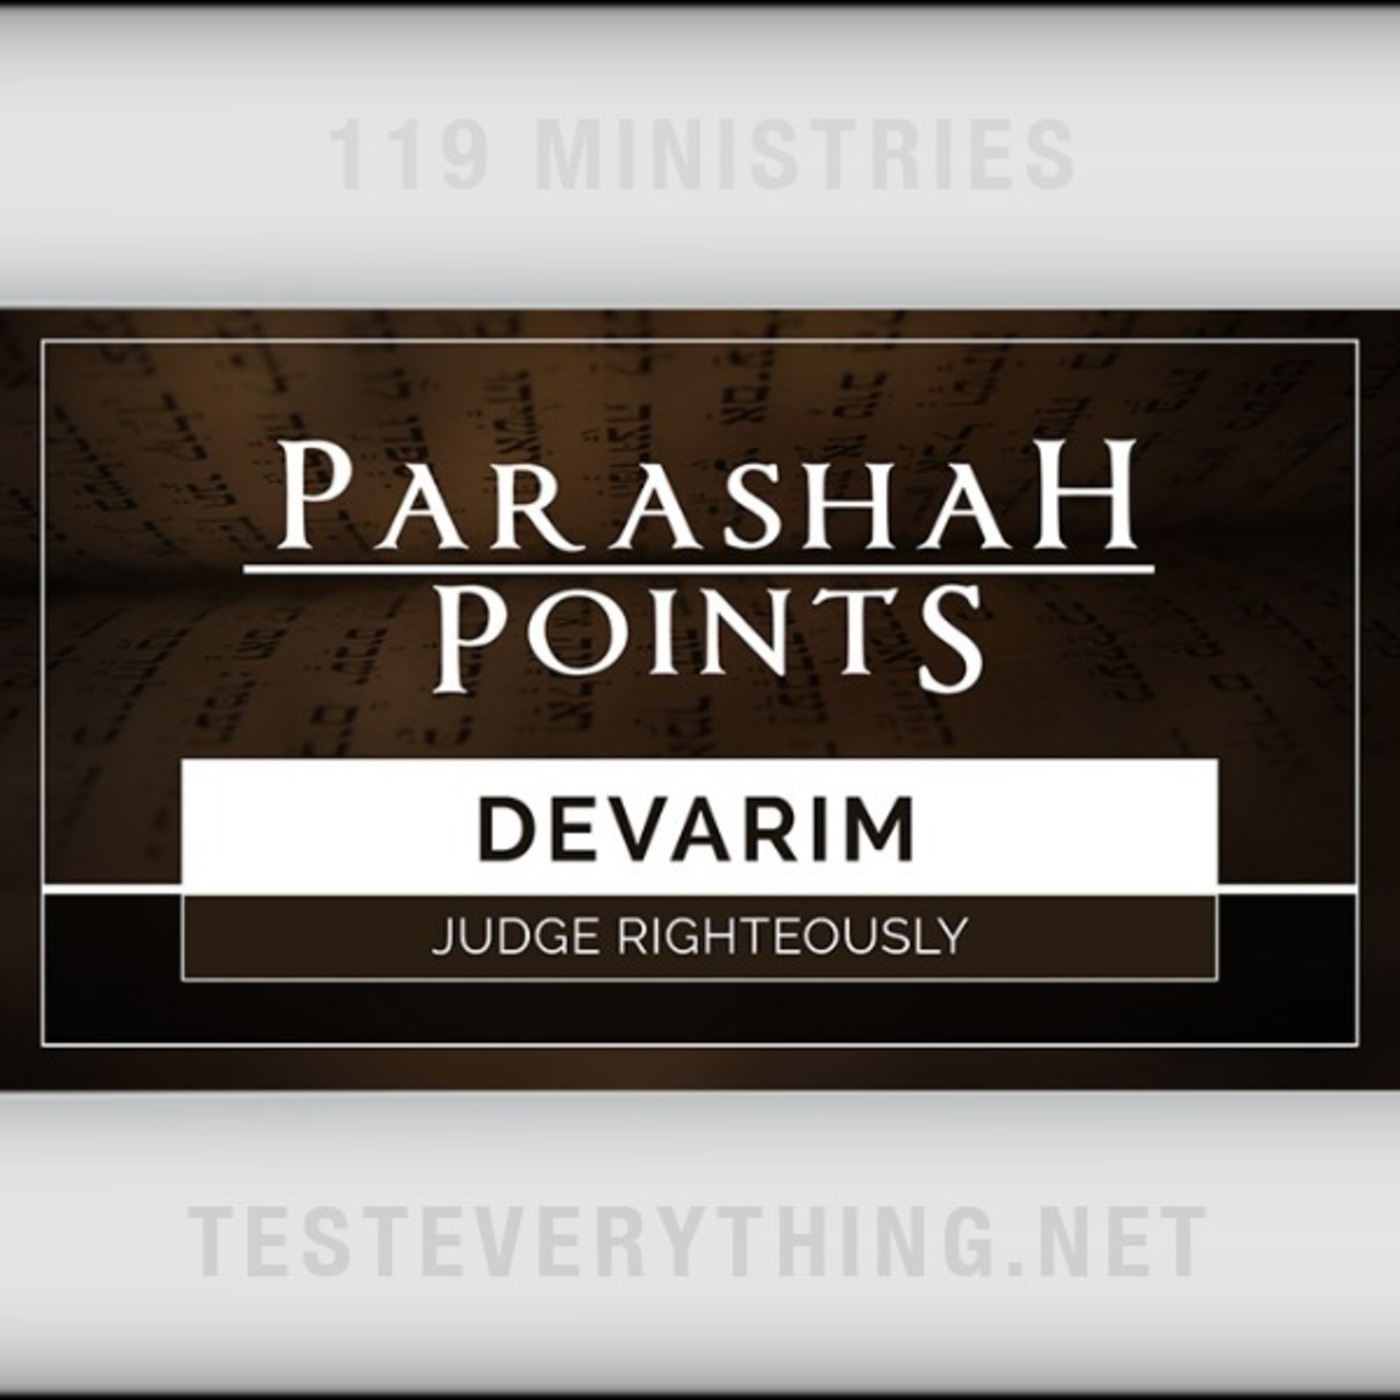 Parashah Points: Devarim - Judge Righteously